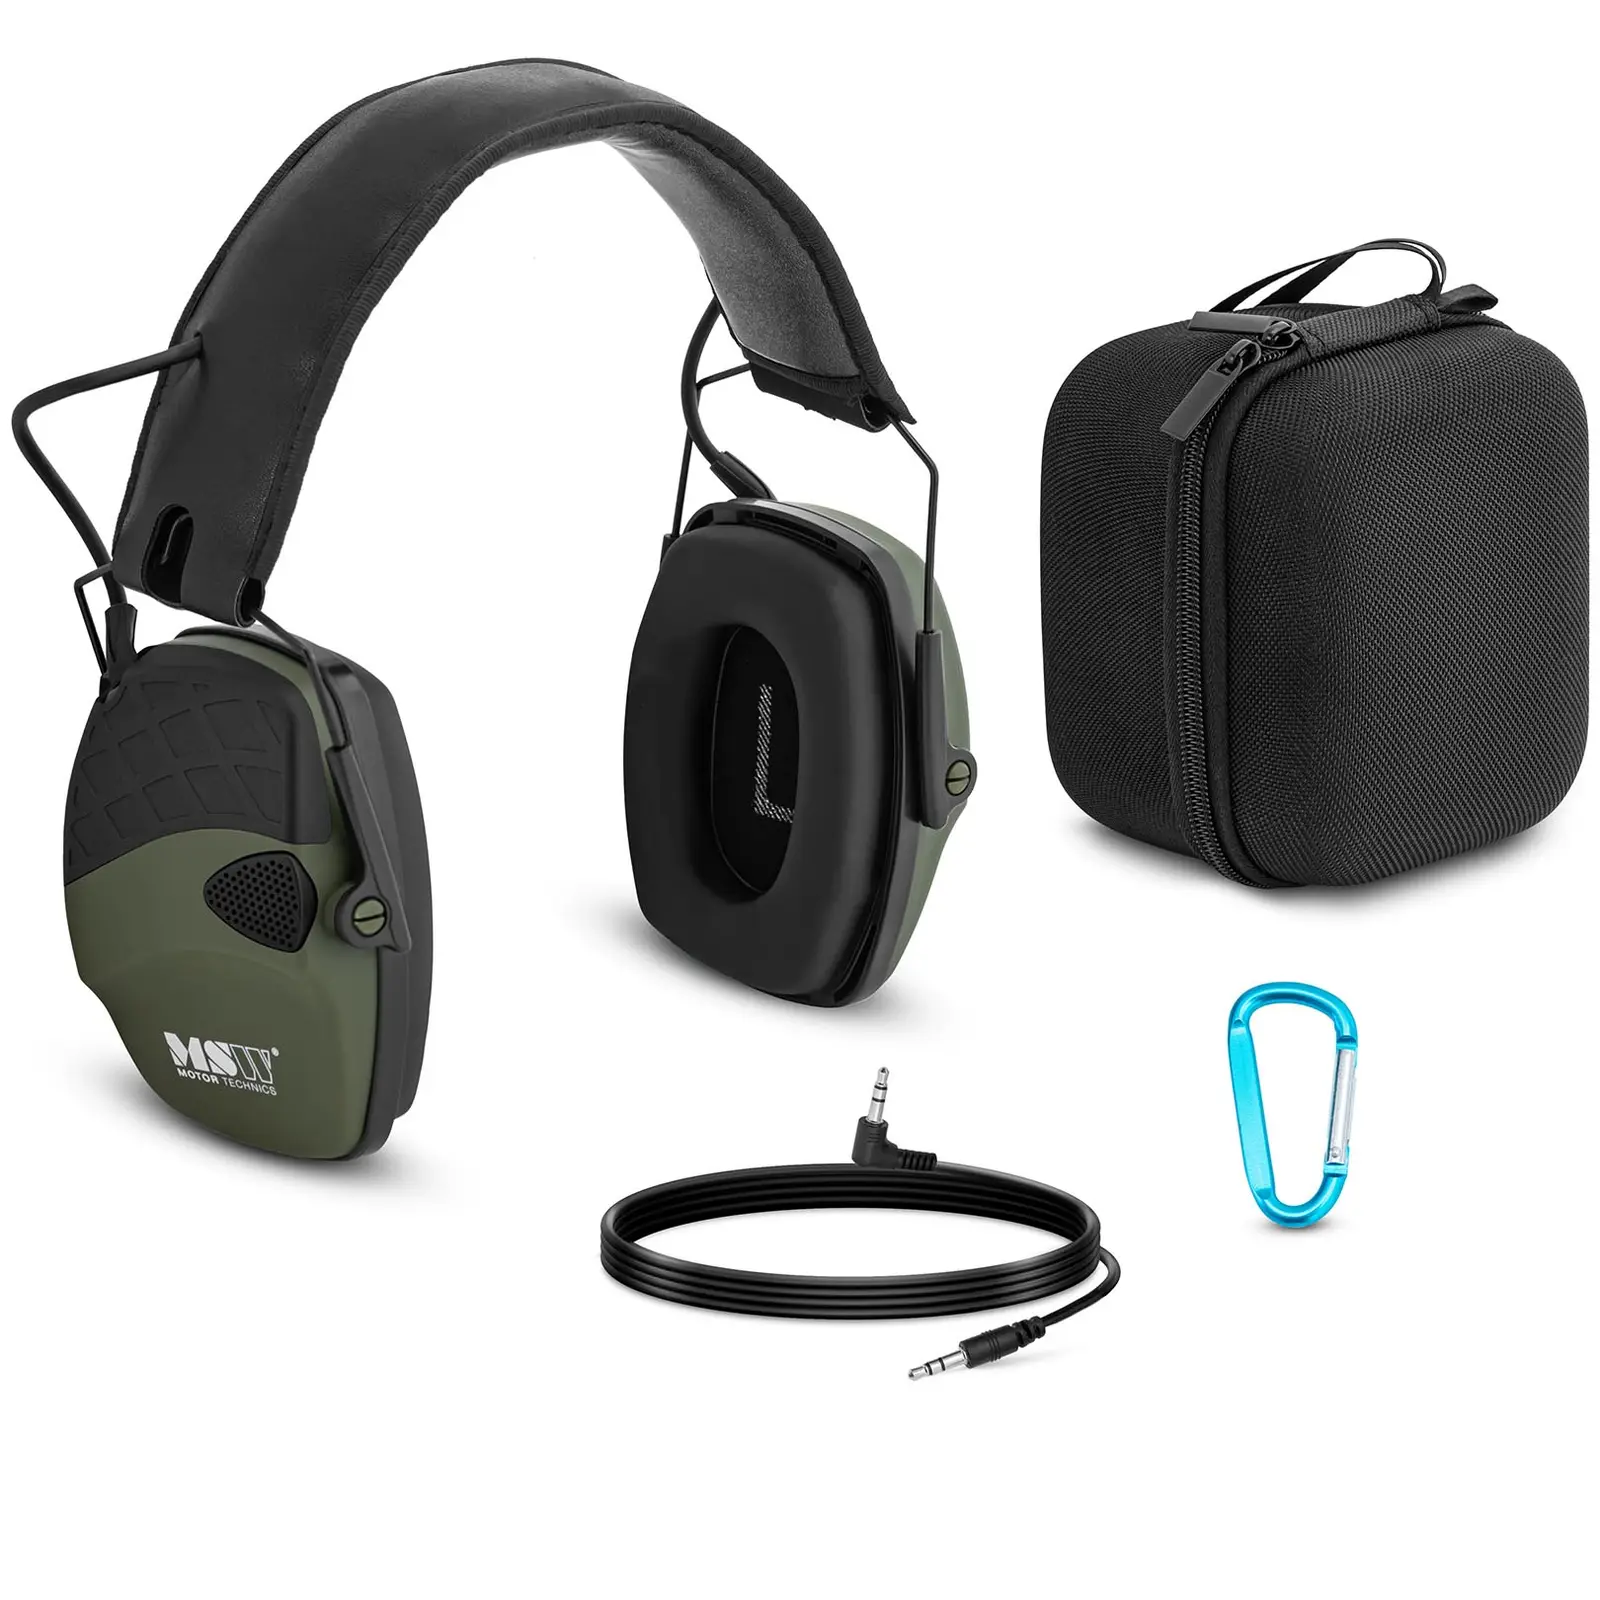 Pracovní sluchátka - dynamická ochrana proti hluku ve venkovním prostředí - zelená barva